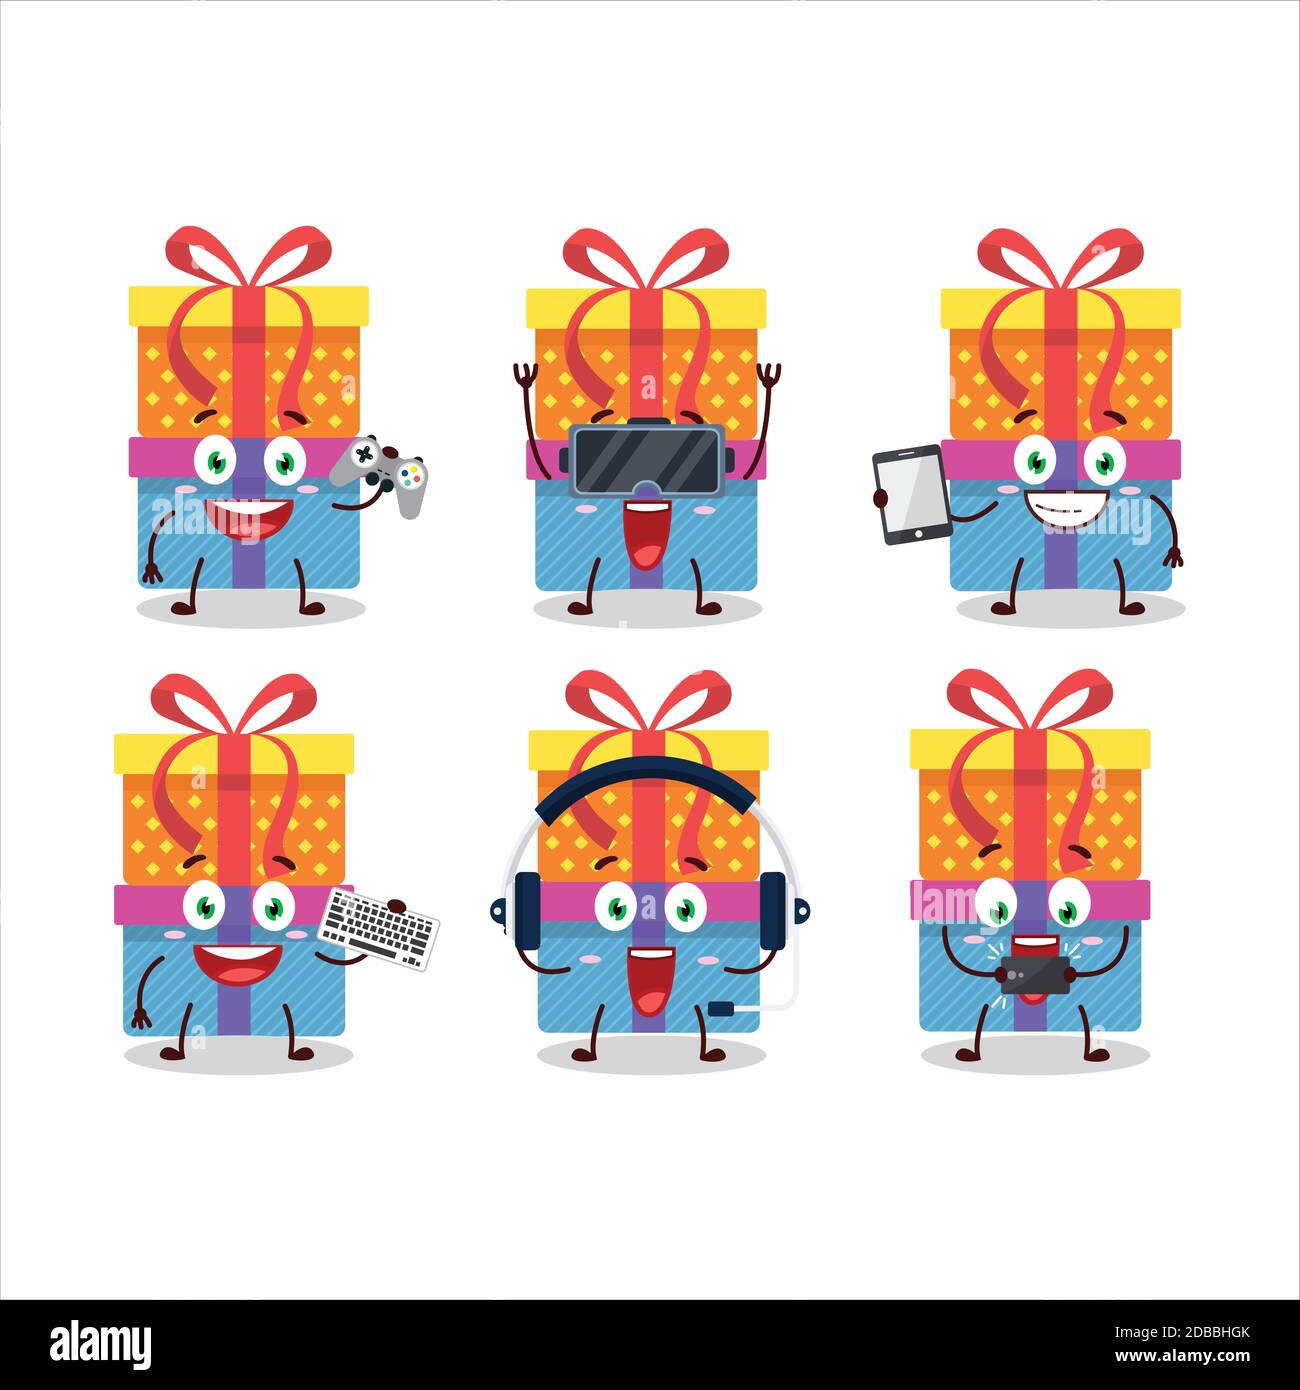 Double boîte cadeau personnage de dessin animé jouent à des jeux avec divers émoticônes mignons Illustration de Vecteur